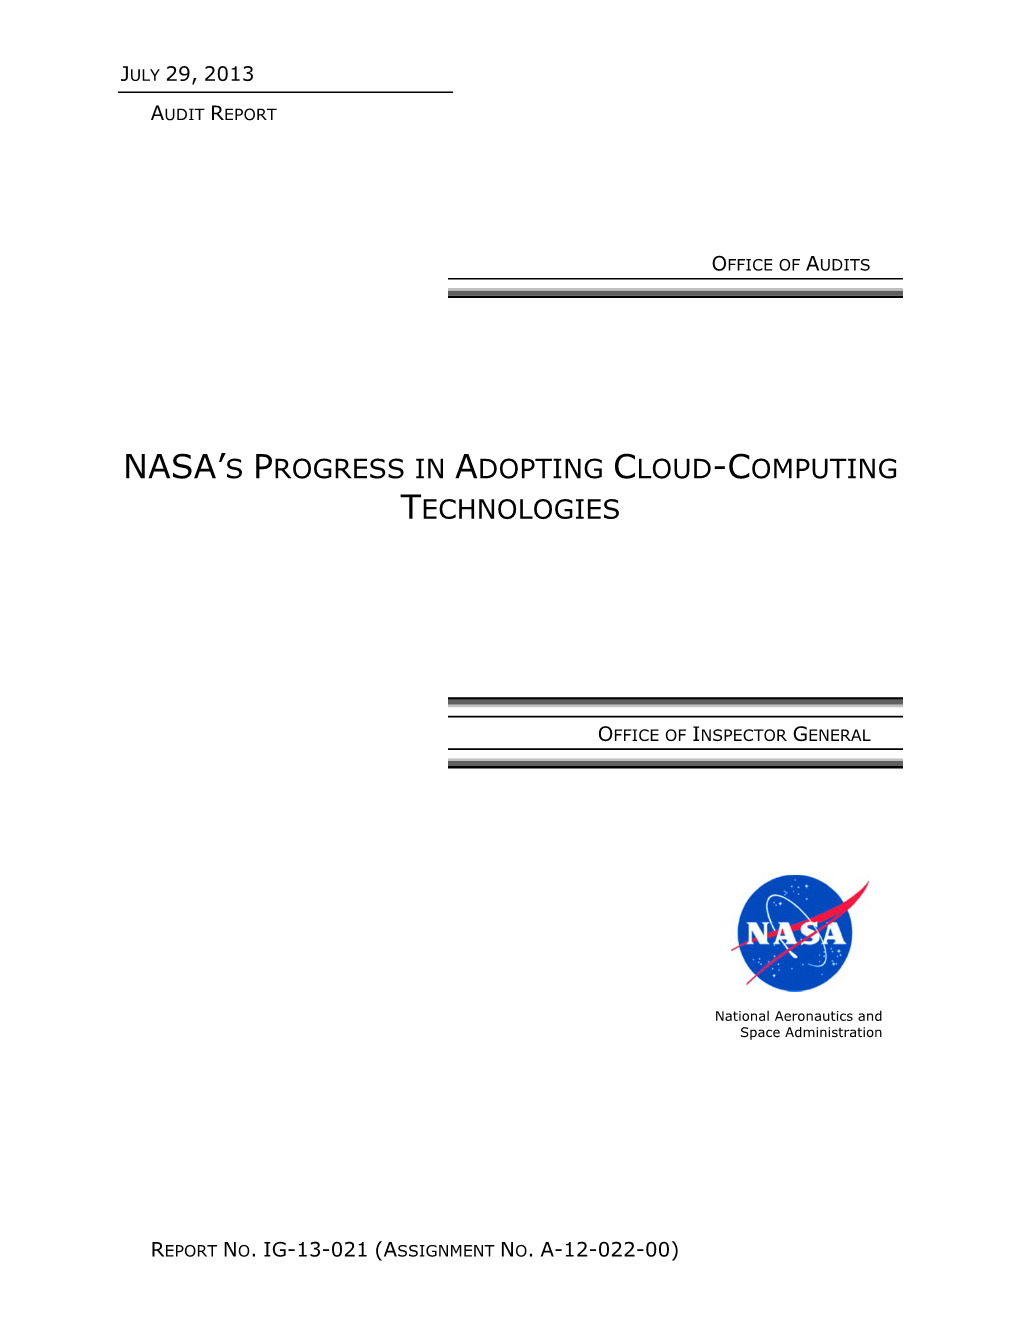 NASA's Adoption of Cloud-Computing Technologies (IG-13-021)